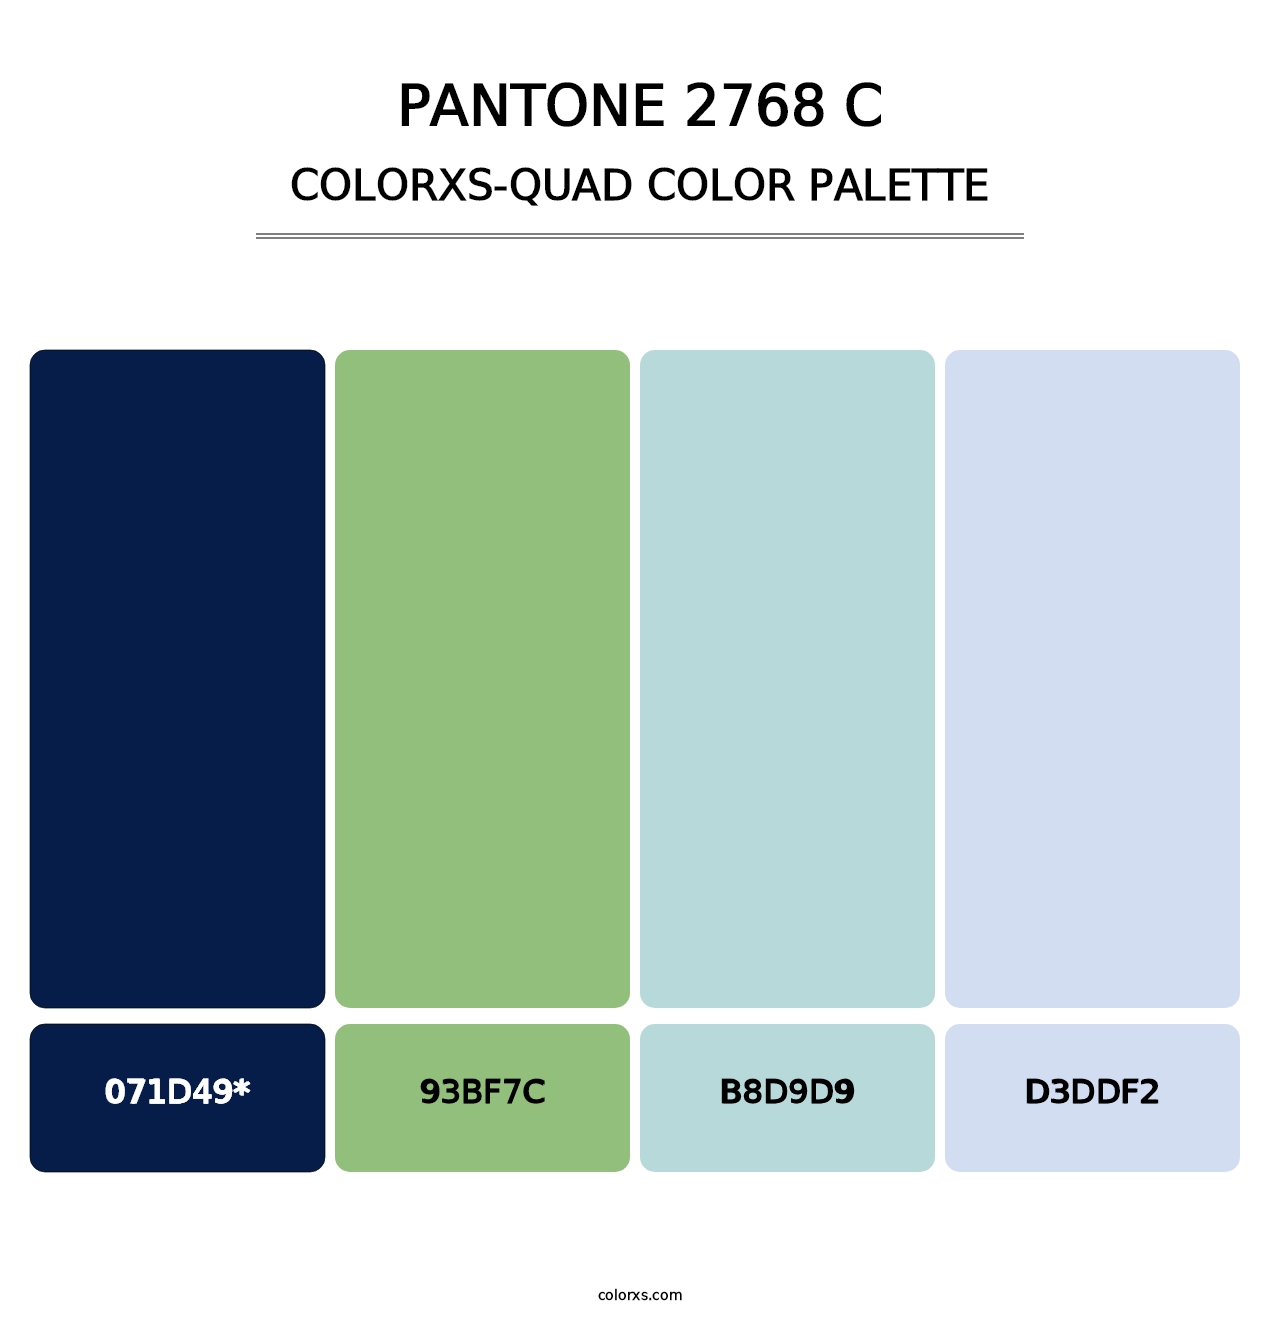 PANTONE 2768 C - Colorxs Quad Palette